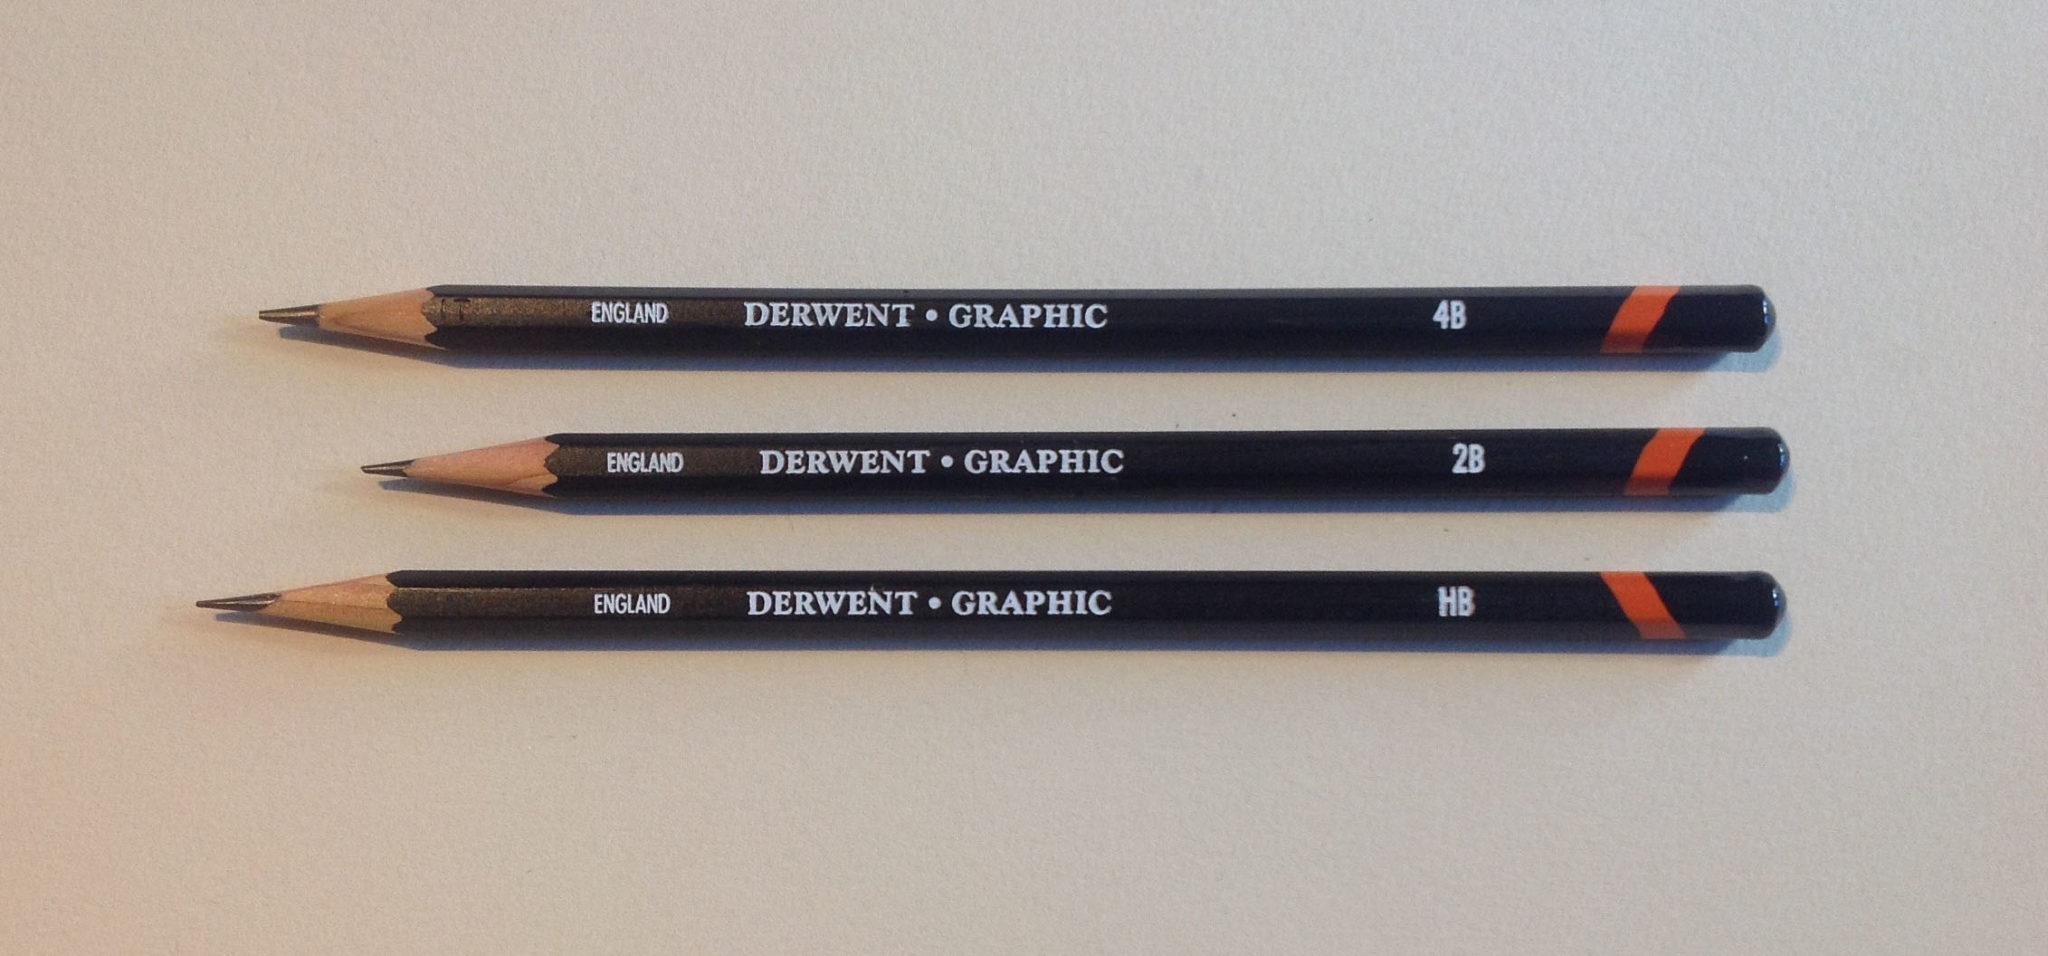 Derwent Sketch Pencils 4/Pkg HB, 2B, 4b & 8b